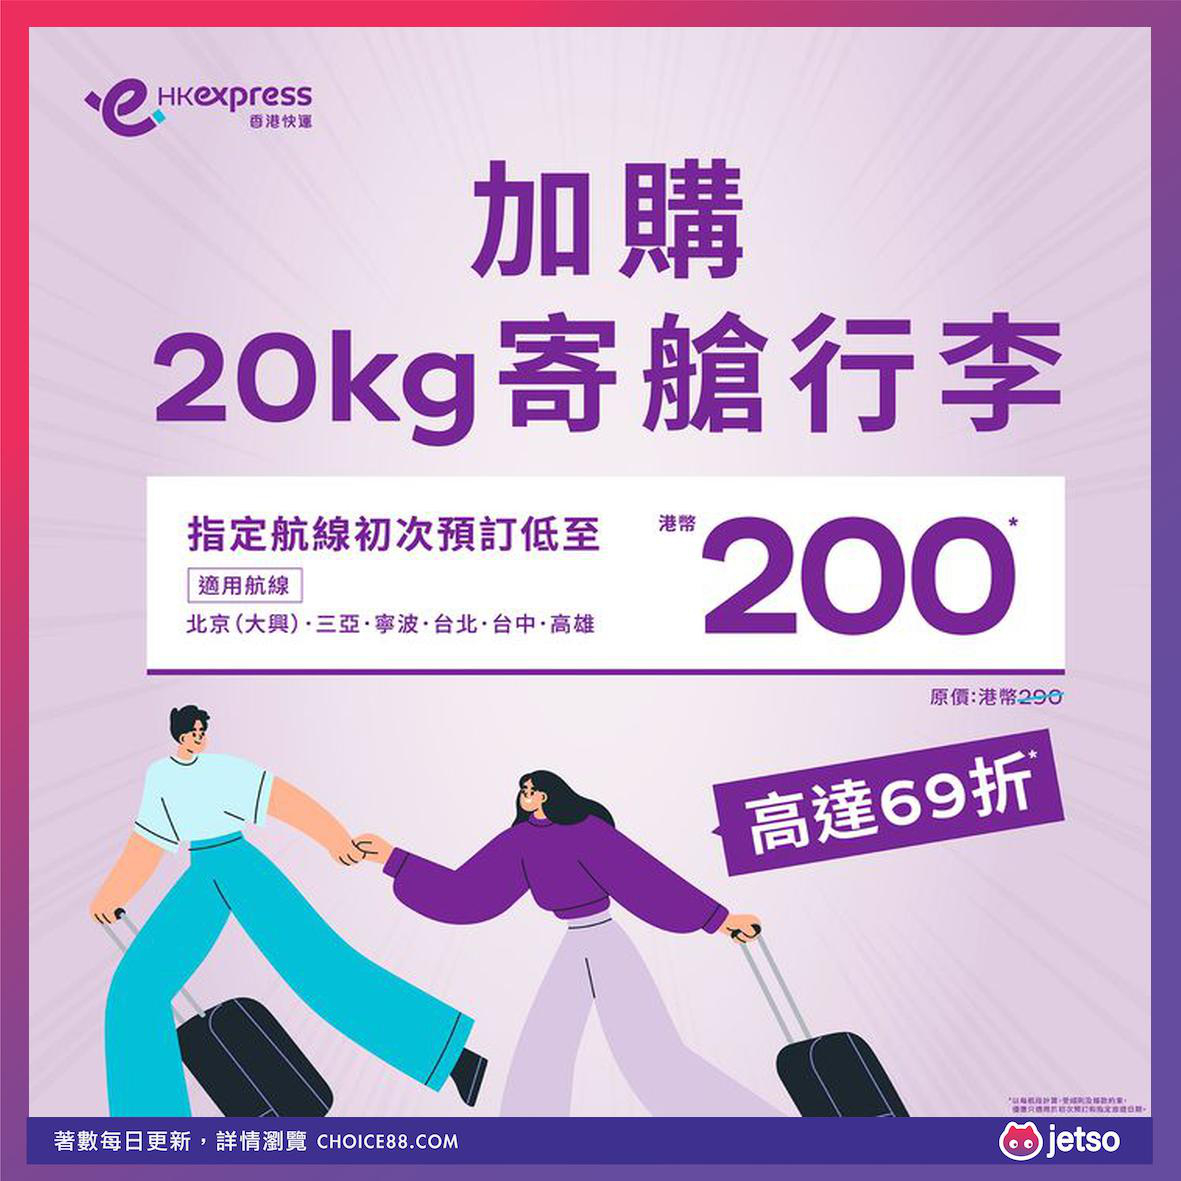 HK Express : [机票优惠]初夏快闪限时优惠：台北、台中、高雄、北京、宁波、三亚